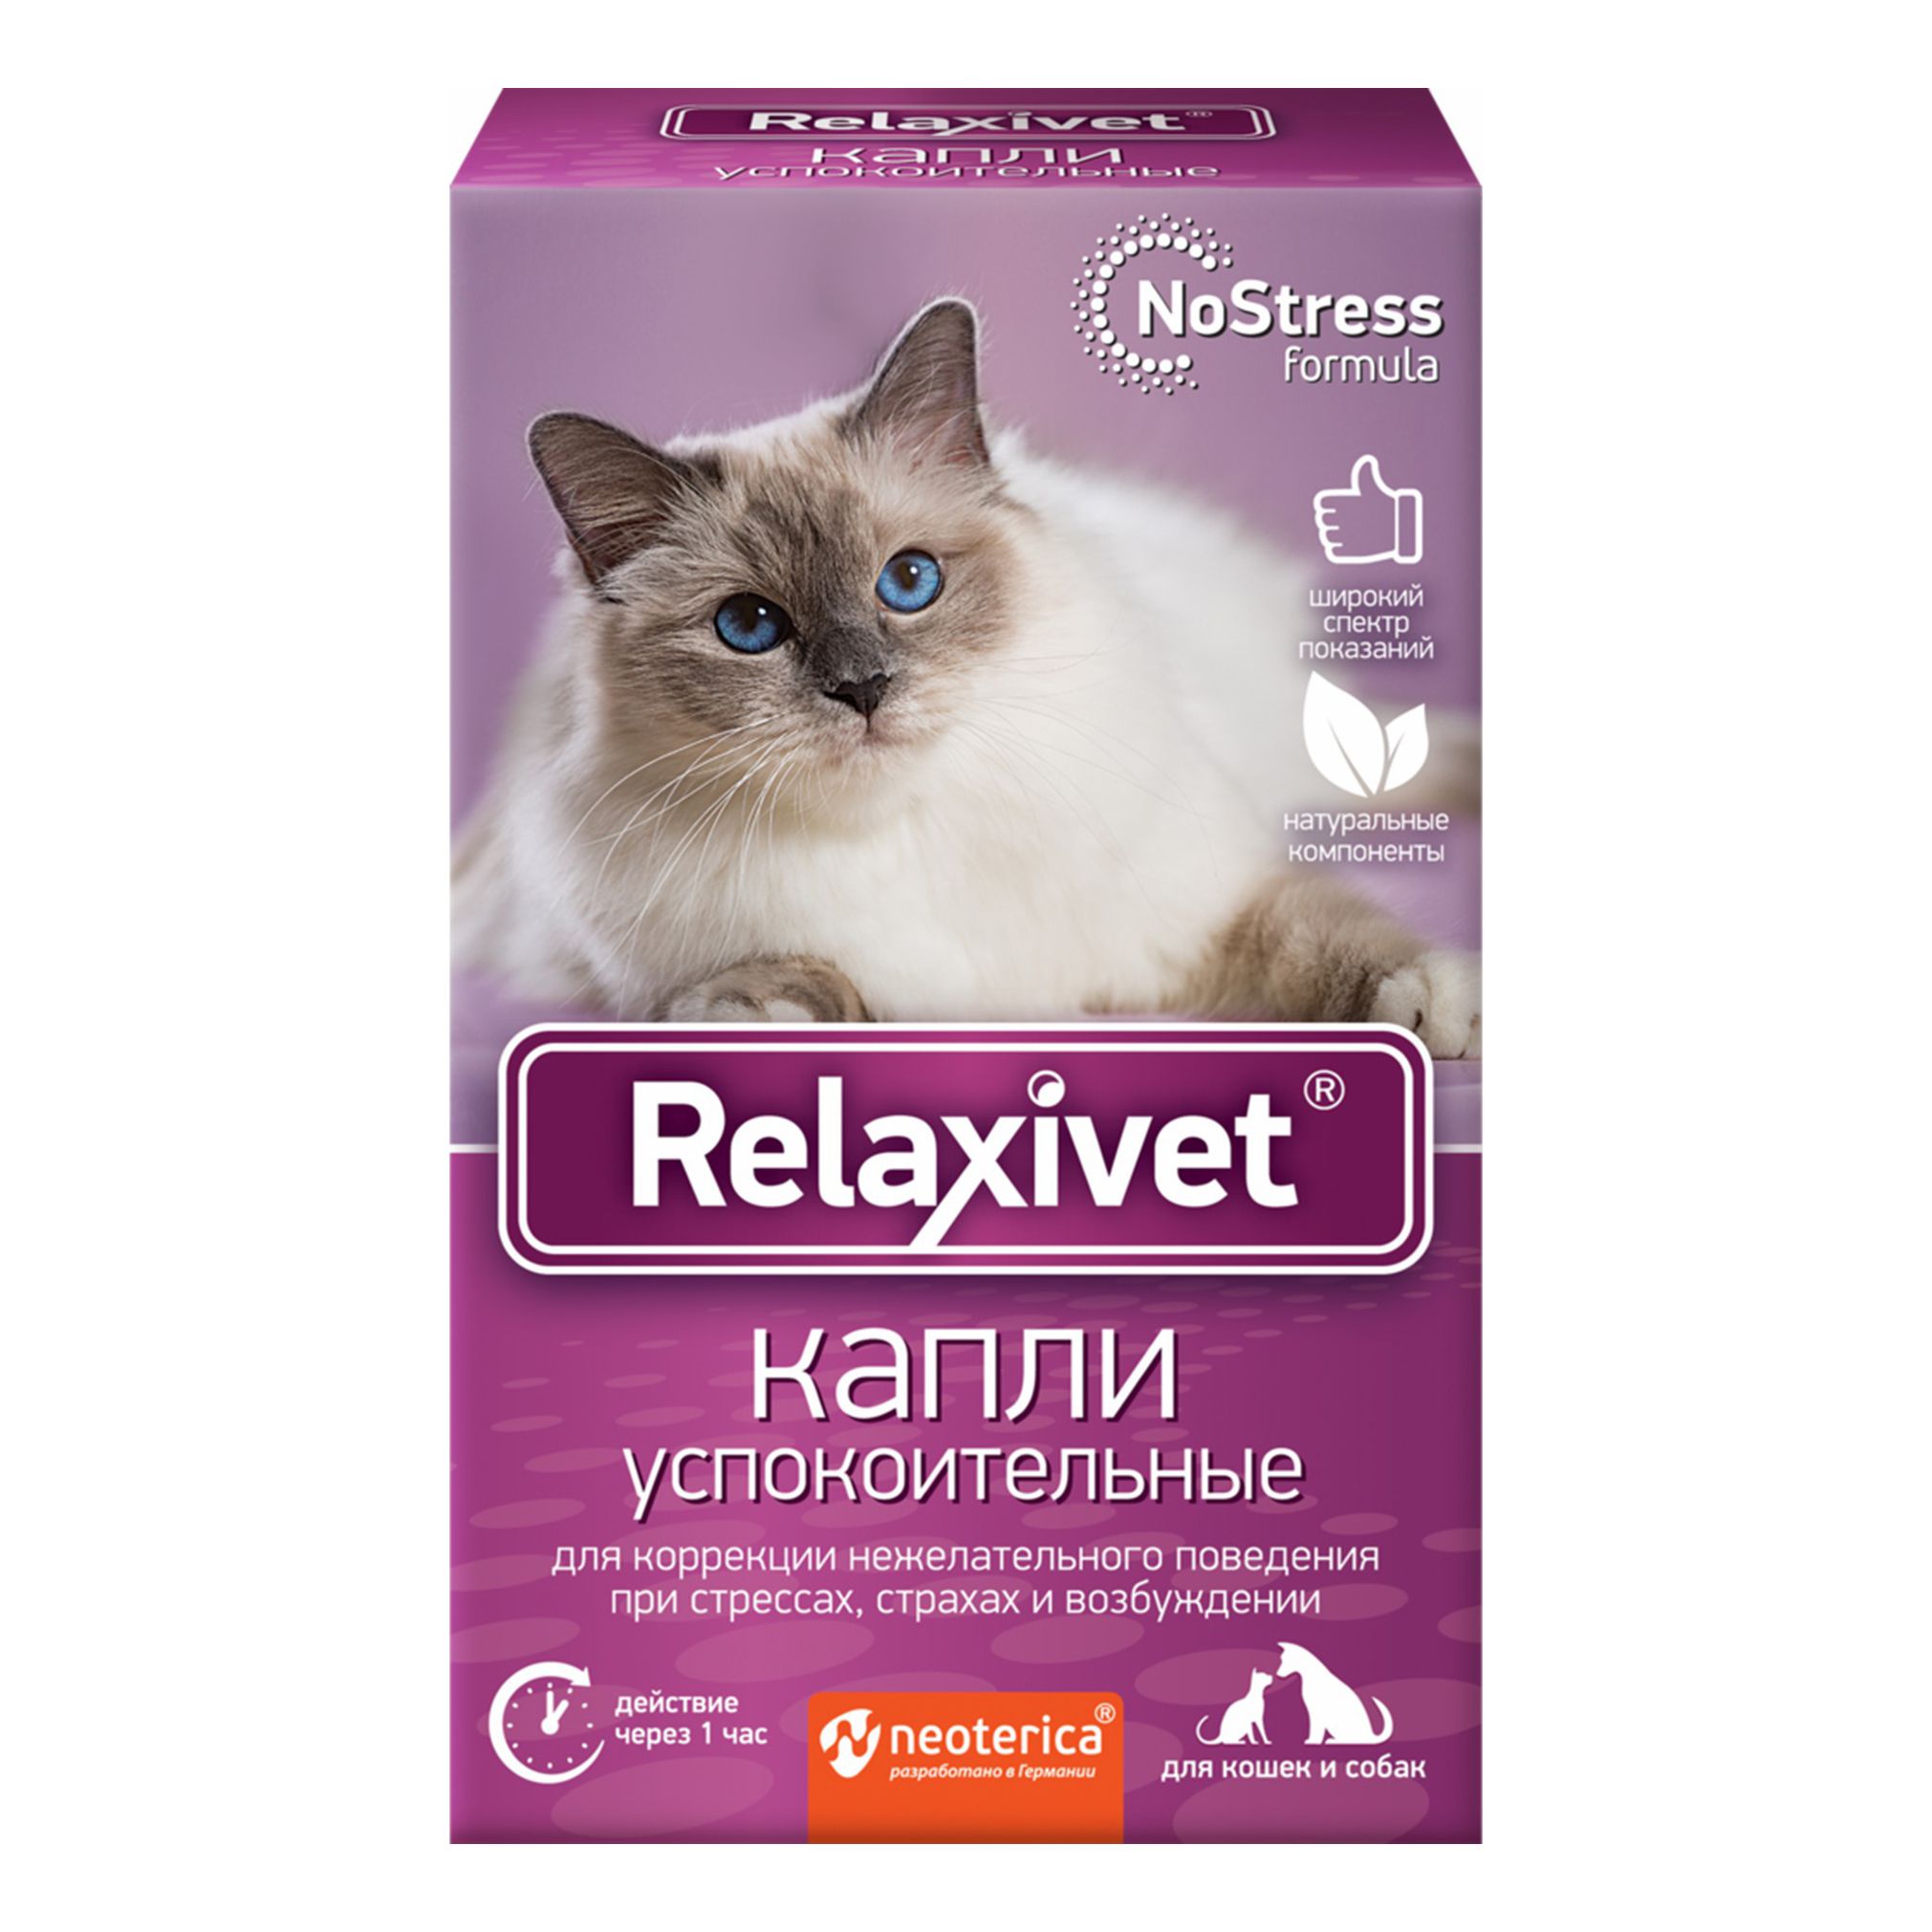 Успокоительное для кошек купить. Relaxivet для кошек таблетки. Успокоительные капли для кошек Релаксивет. Капли Relaxivet spot-on успокоительные. Relaxivet капли успокоительные для кошек.